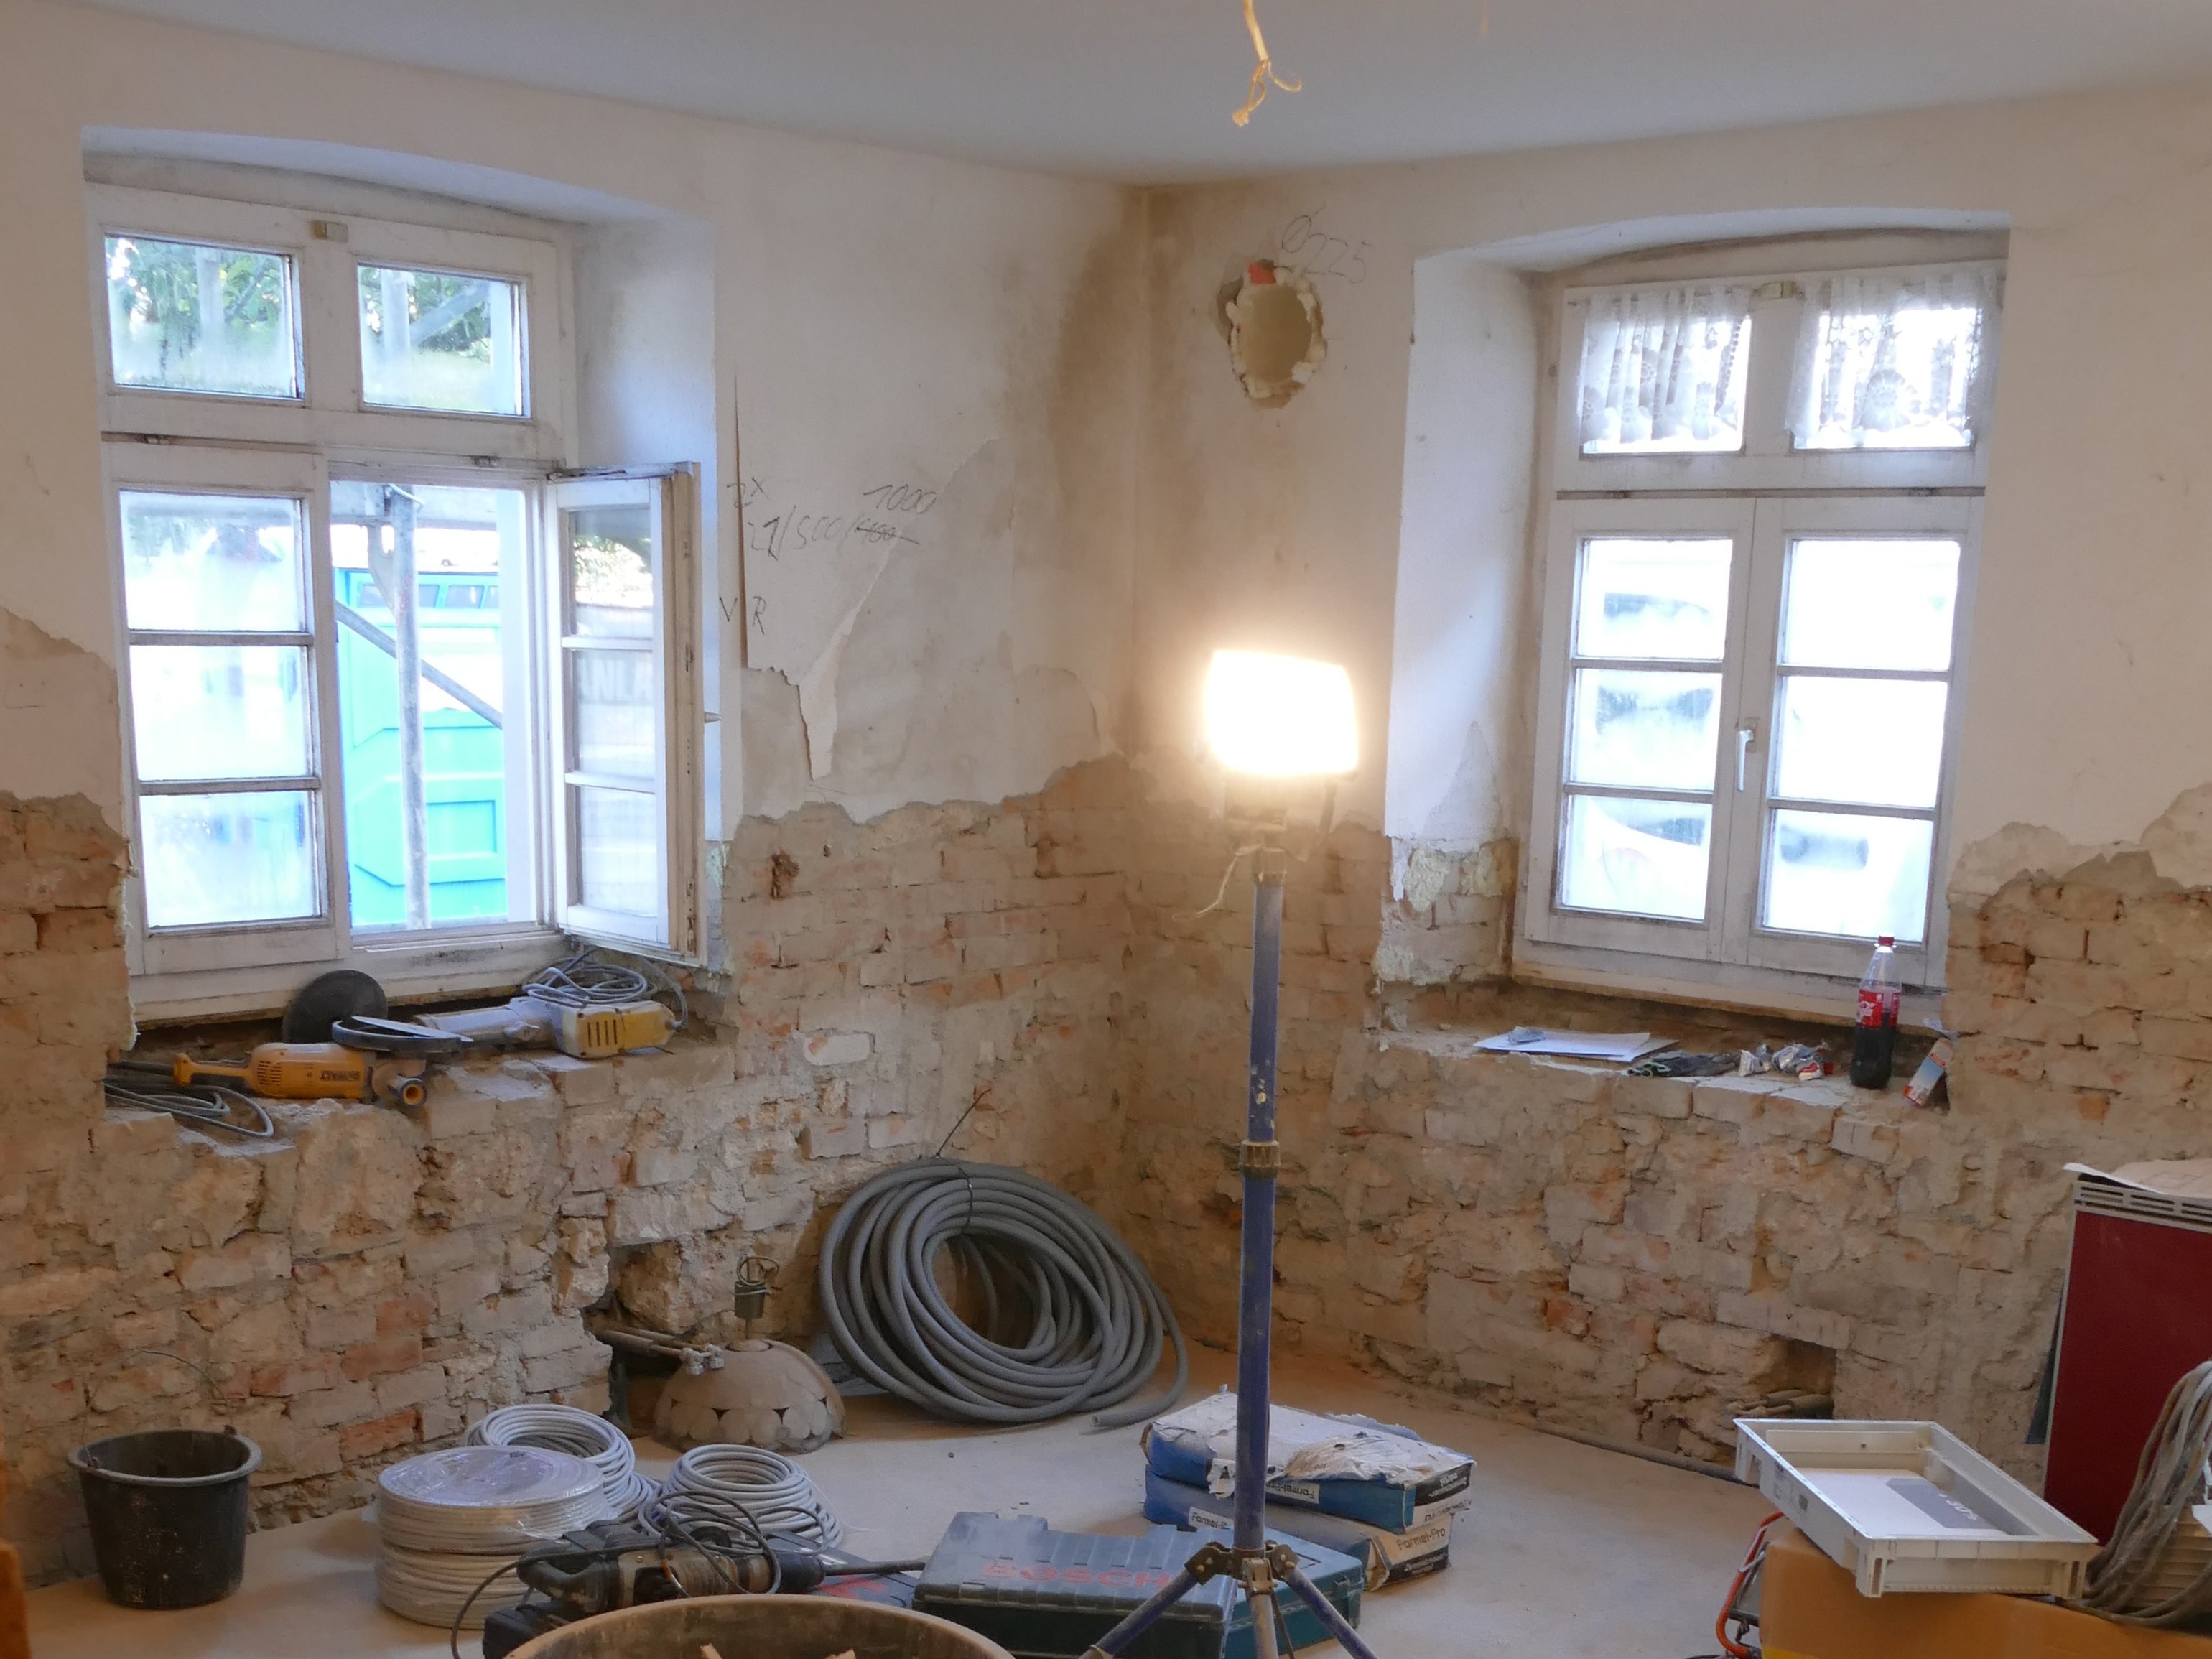  Renovierungsarbeiten im Haus Ravensburger Straße 27 